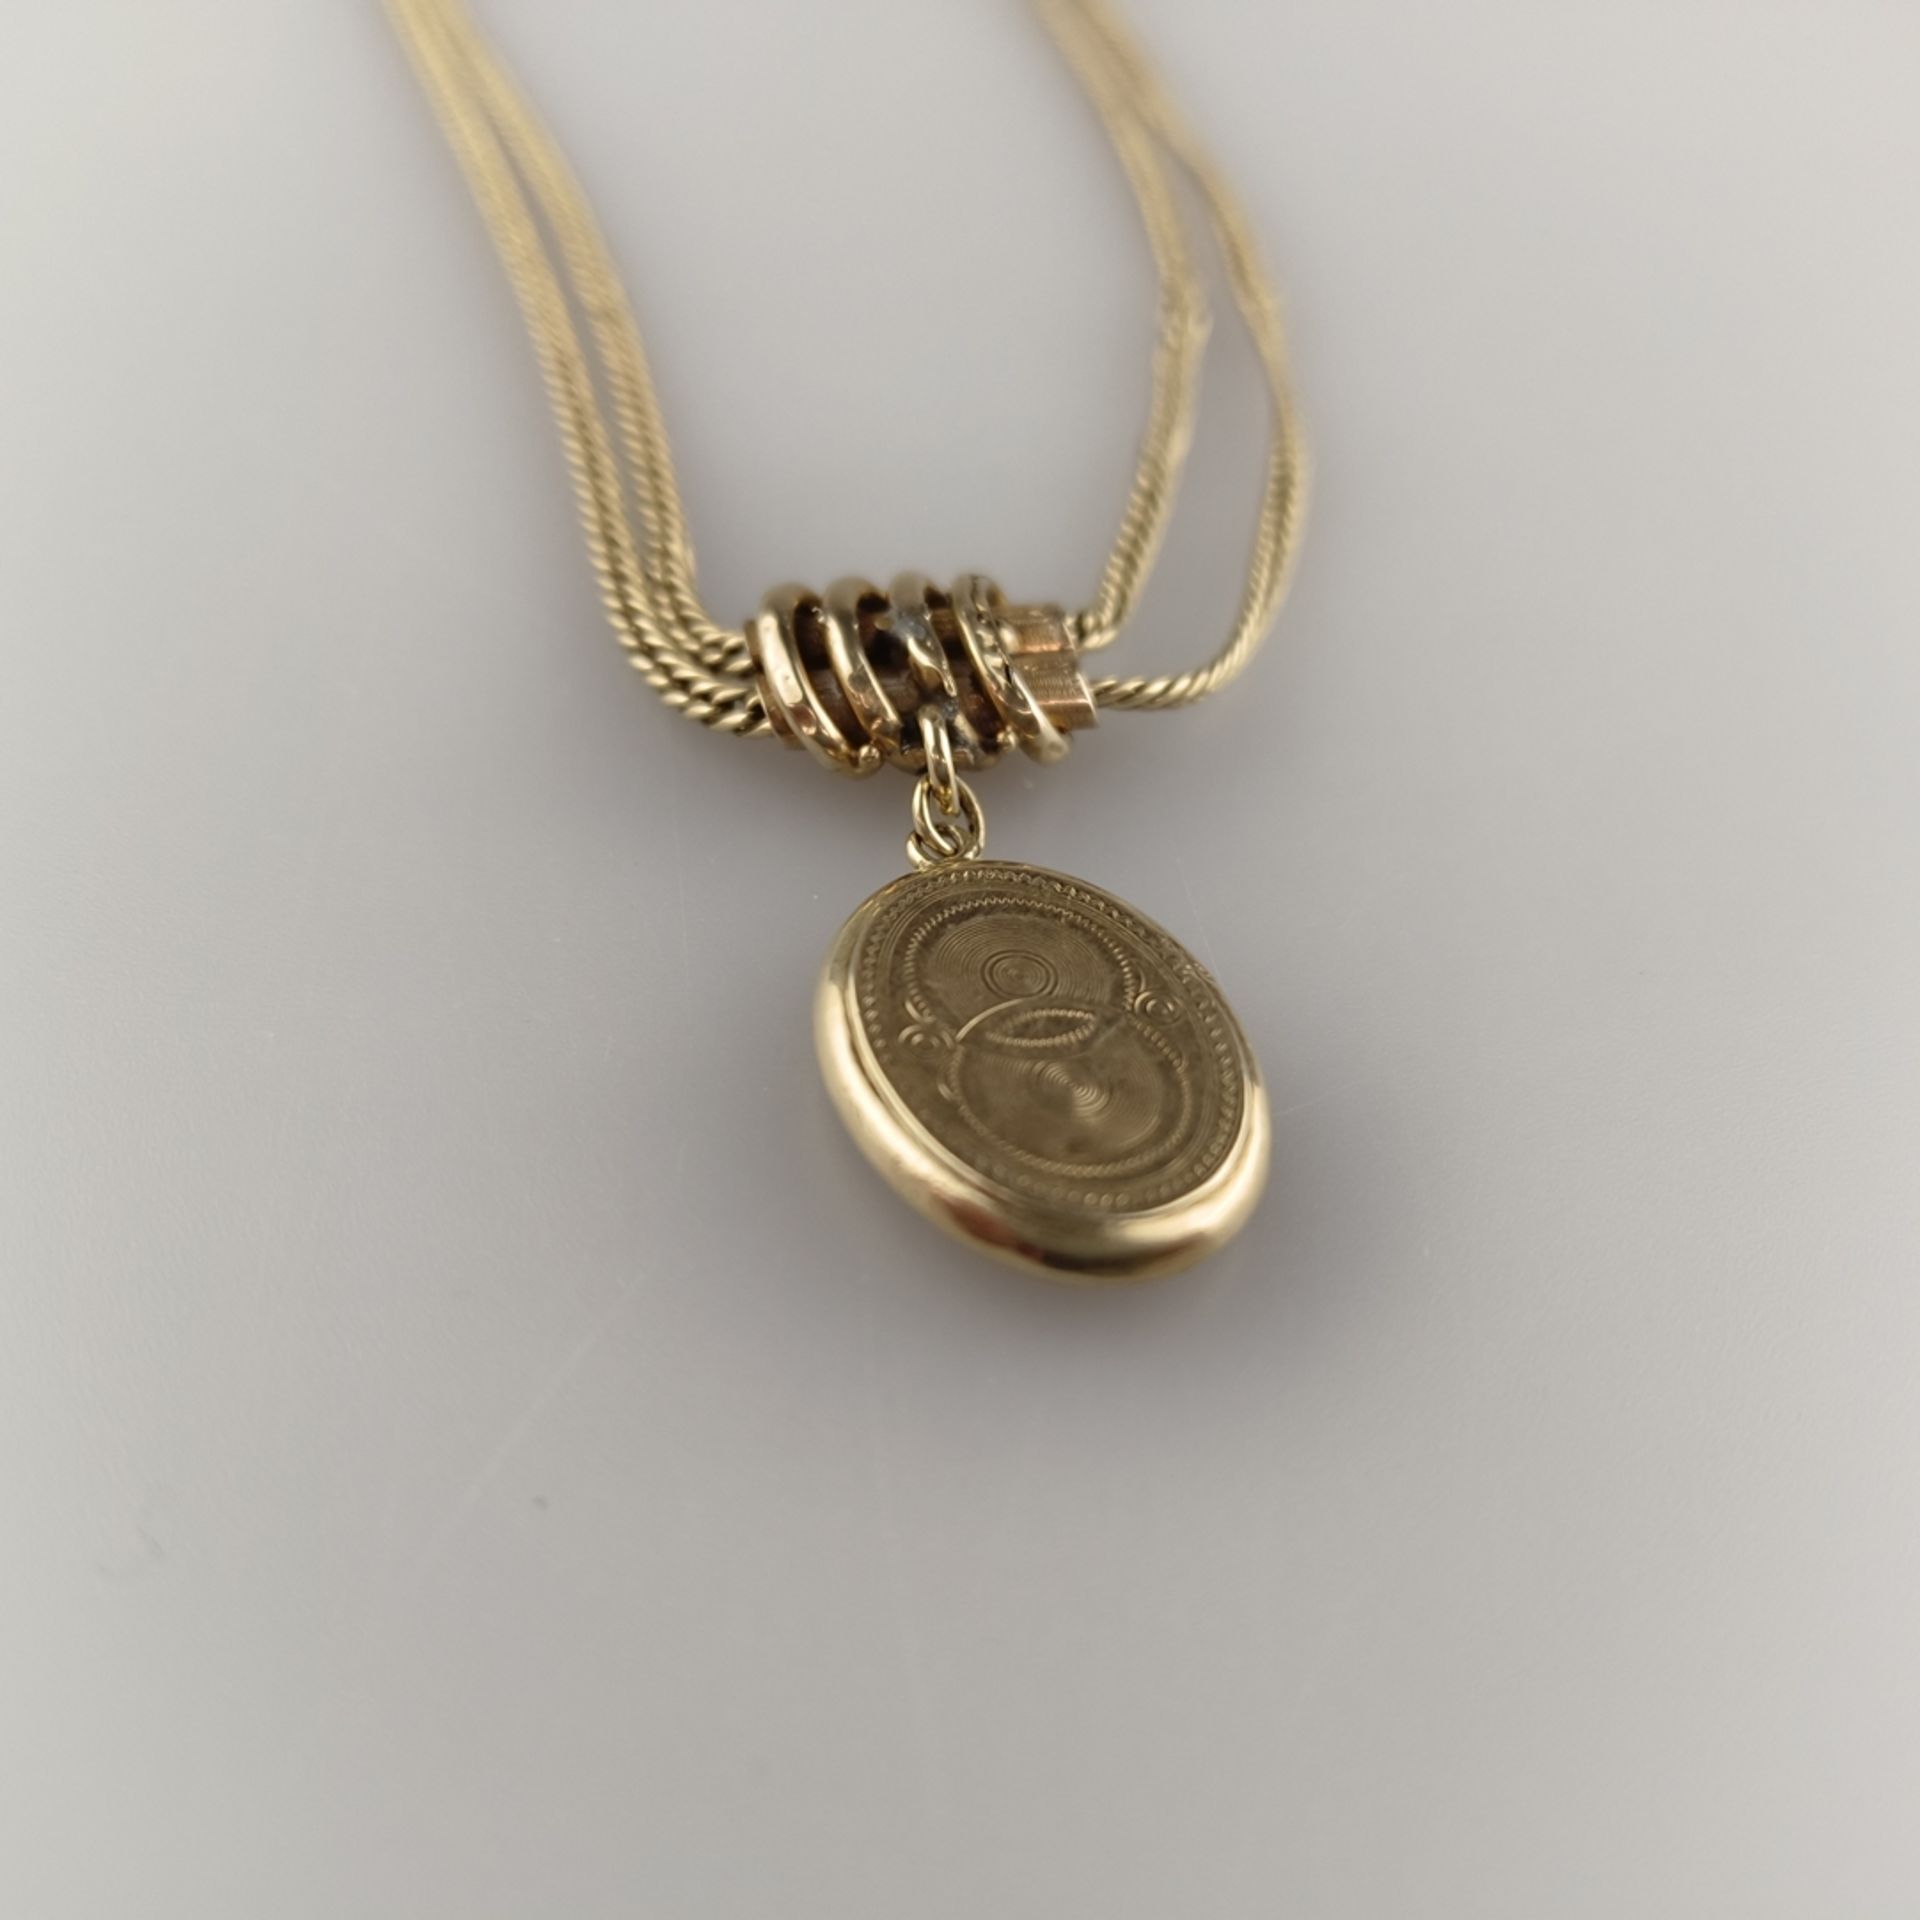 Taschenuhren-Knebelkette - 14K Gelbgold (585/000), mit ovalem Medaillonanhänger aus Schaumgold, L.  - Bild 3 aus 5